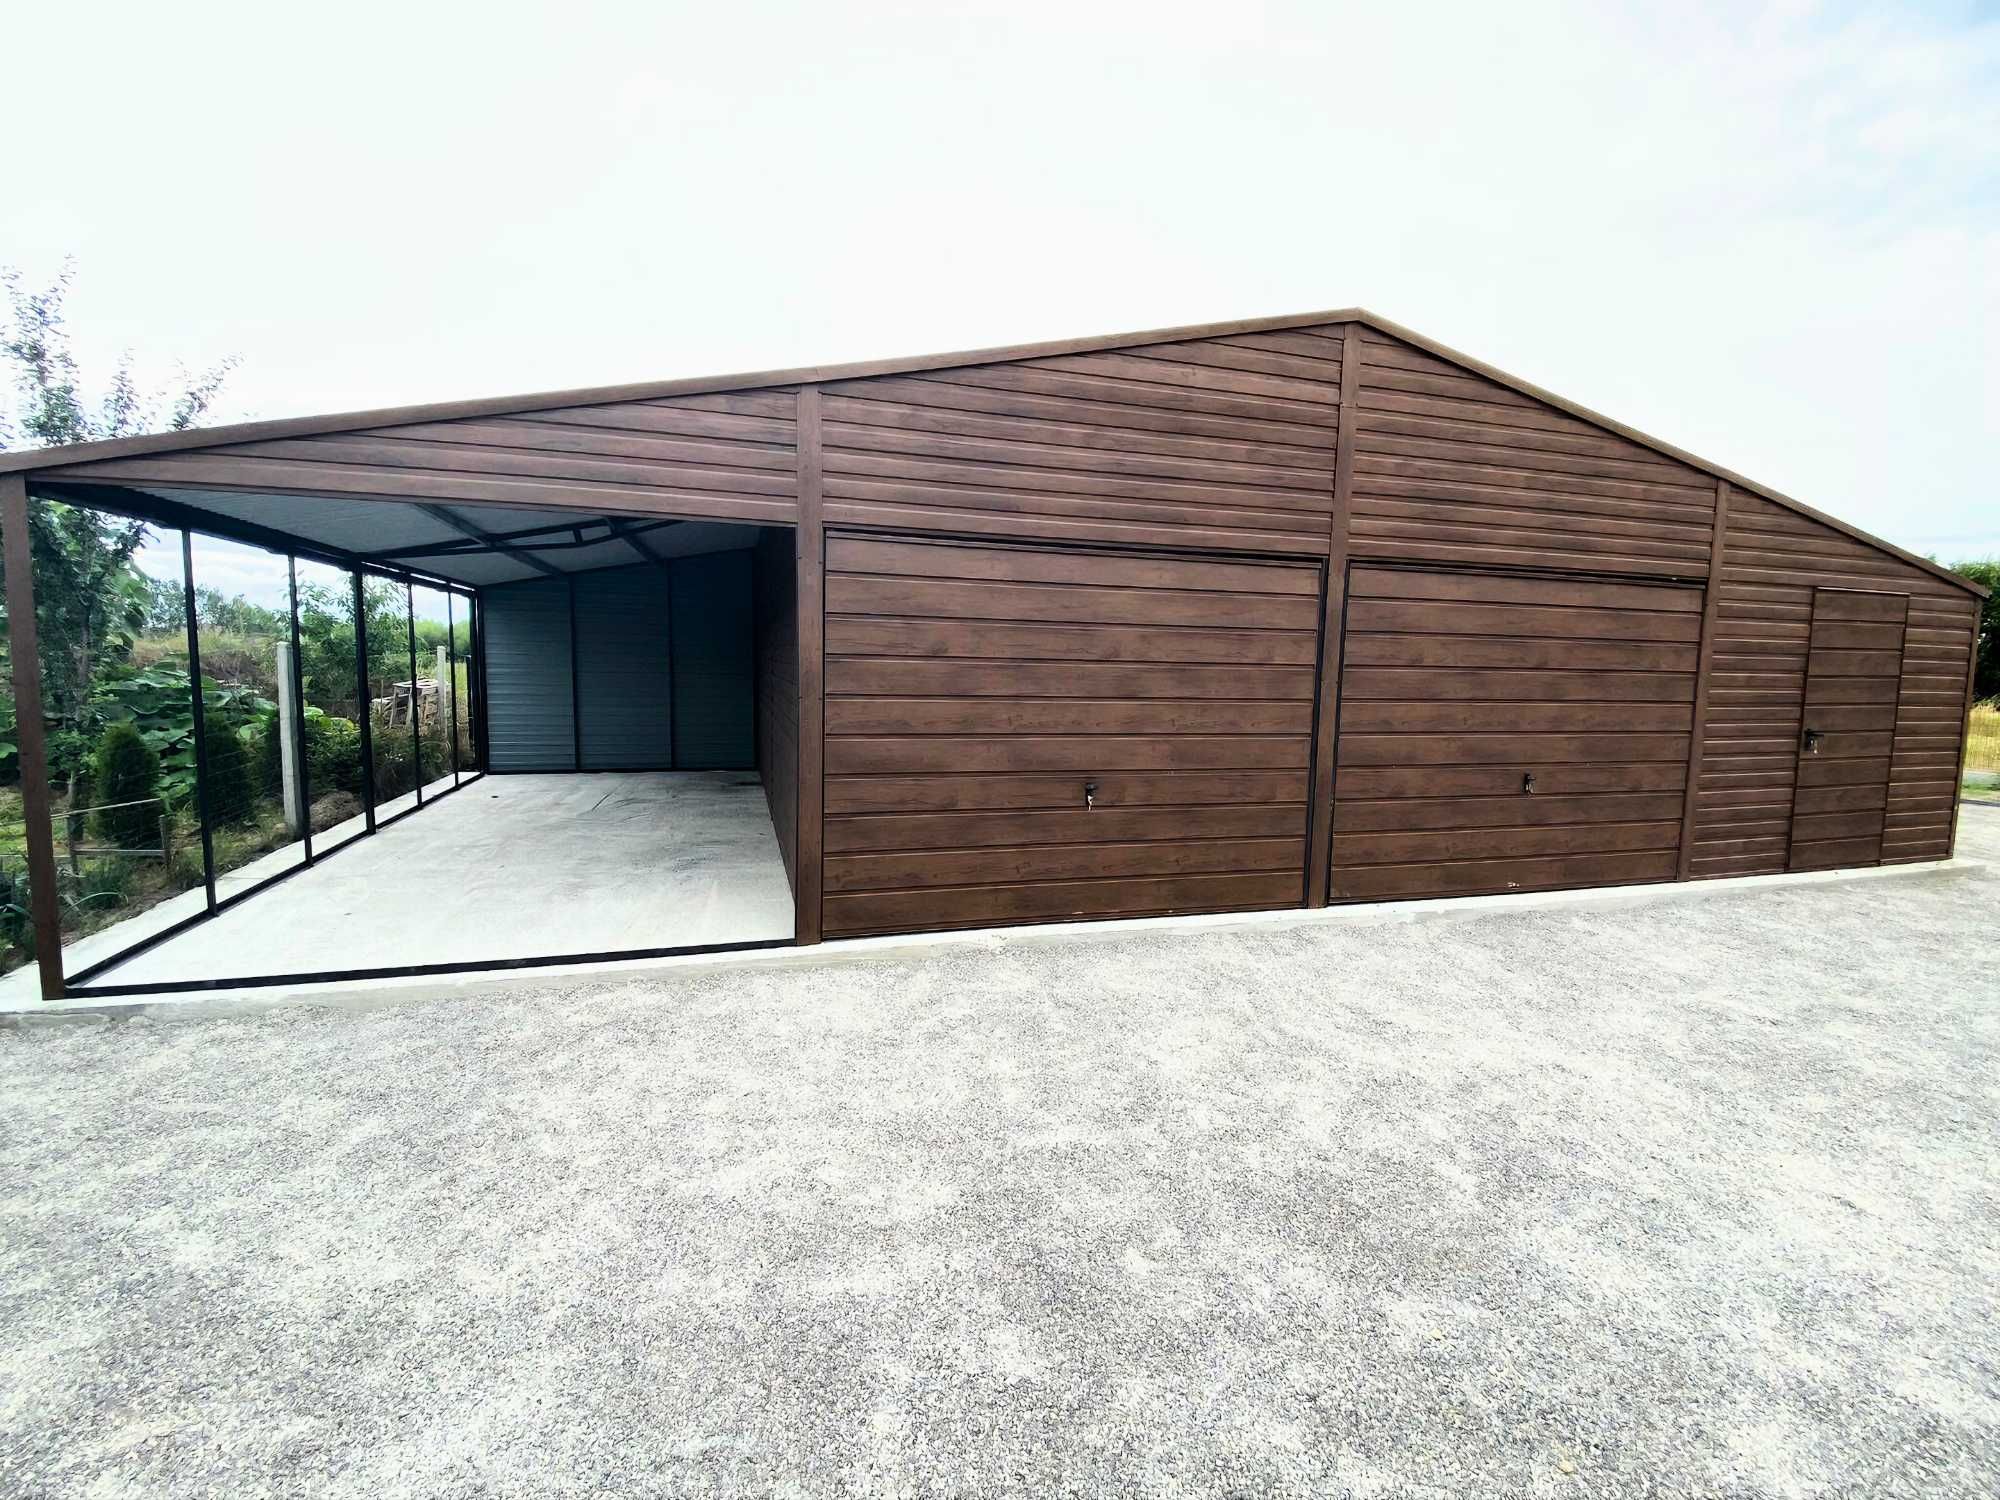 Garaż blaszany hala solidny garaz drewnopodobny 12x6m |13x7 14x8 15x10